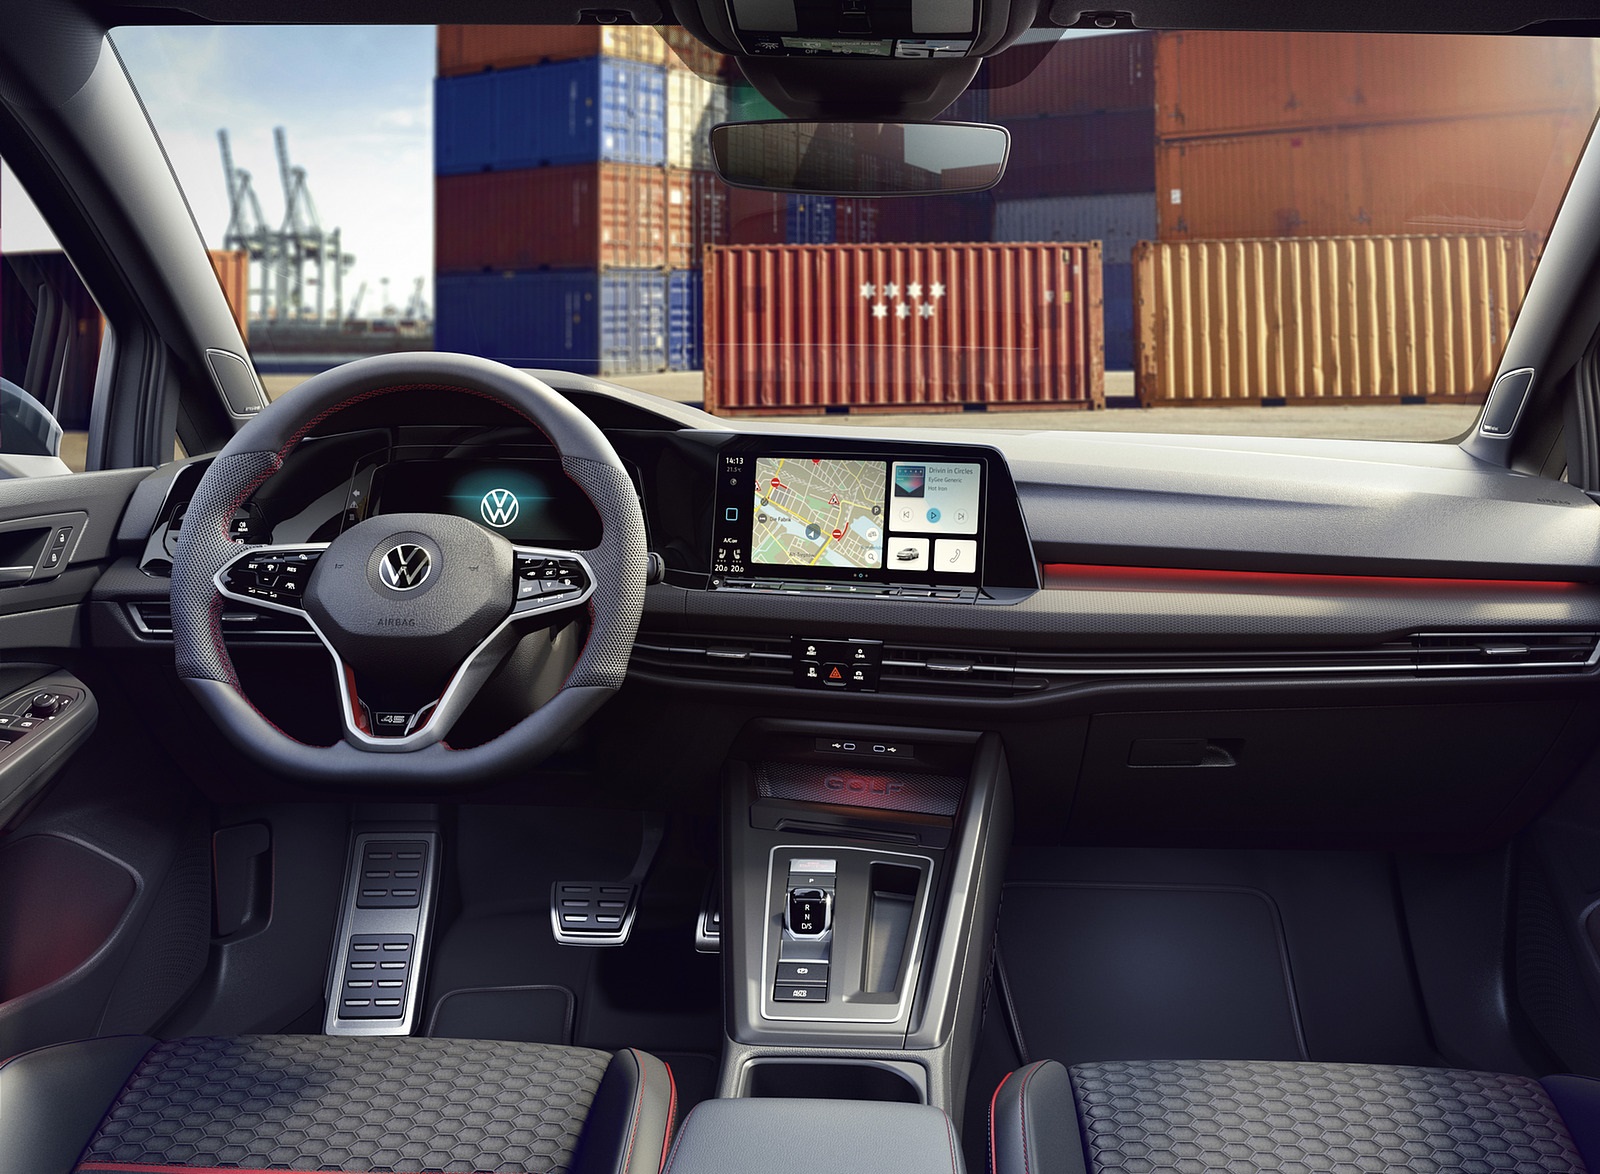 2021 Volkswagen Golf GTI Clubsport 45 Interior Cockpit Wallpapers #22 of 42